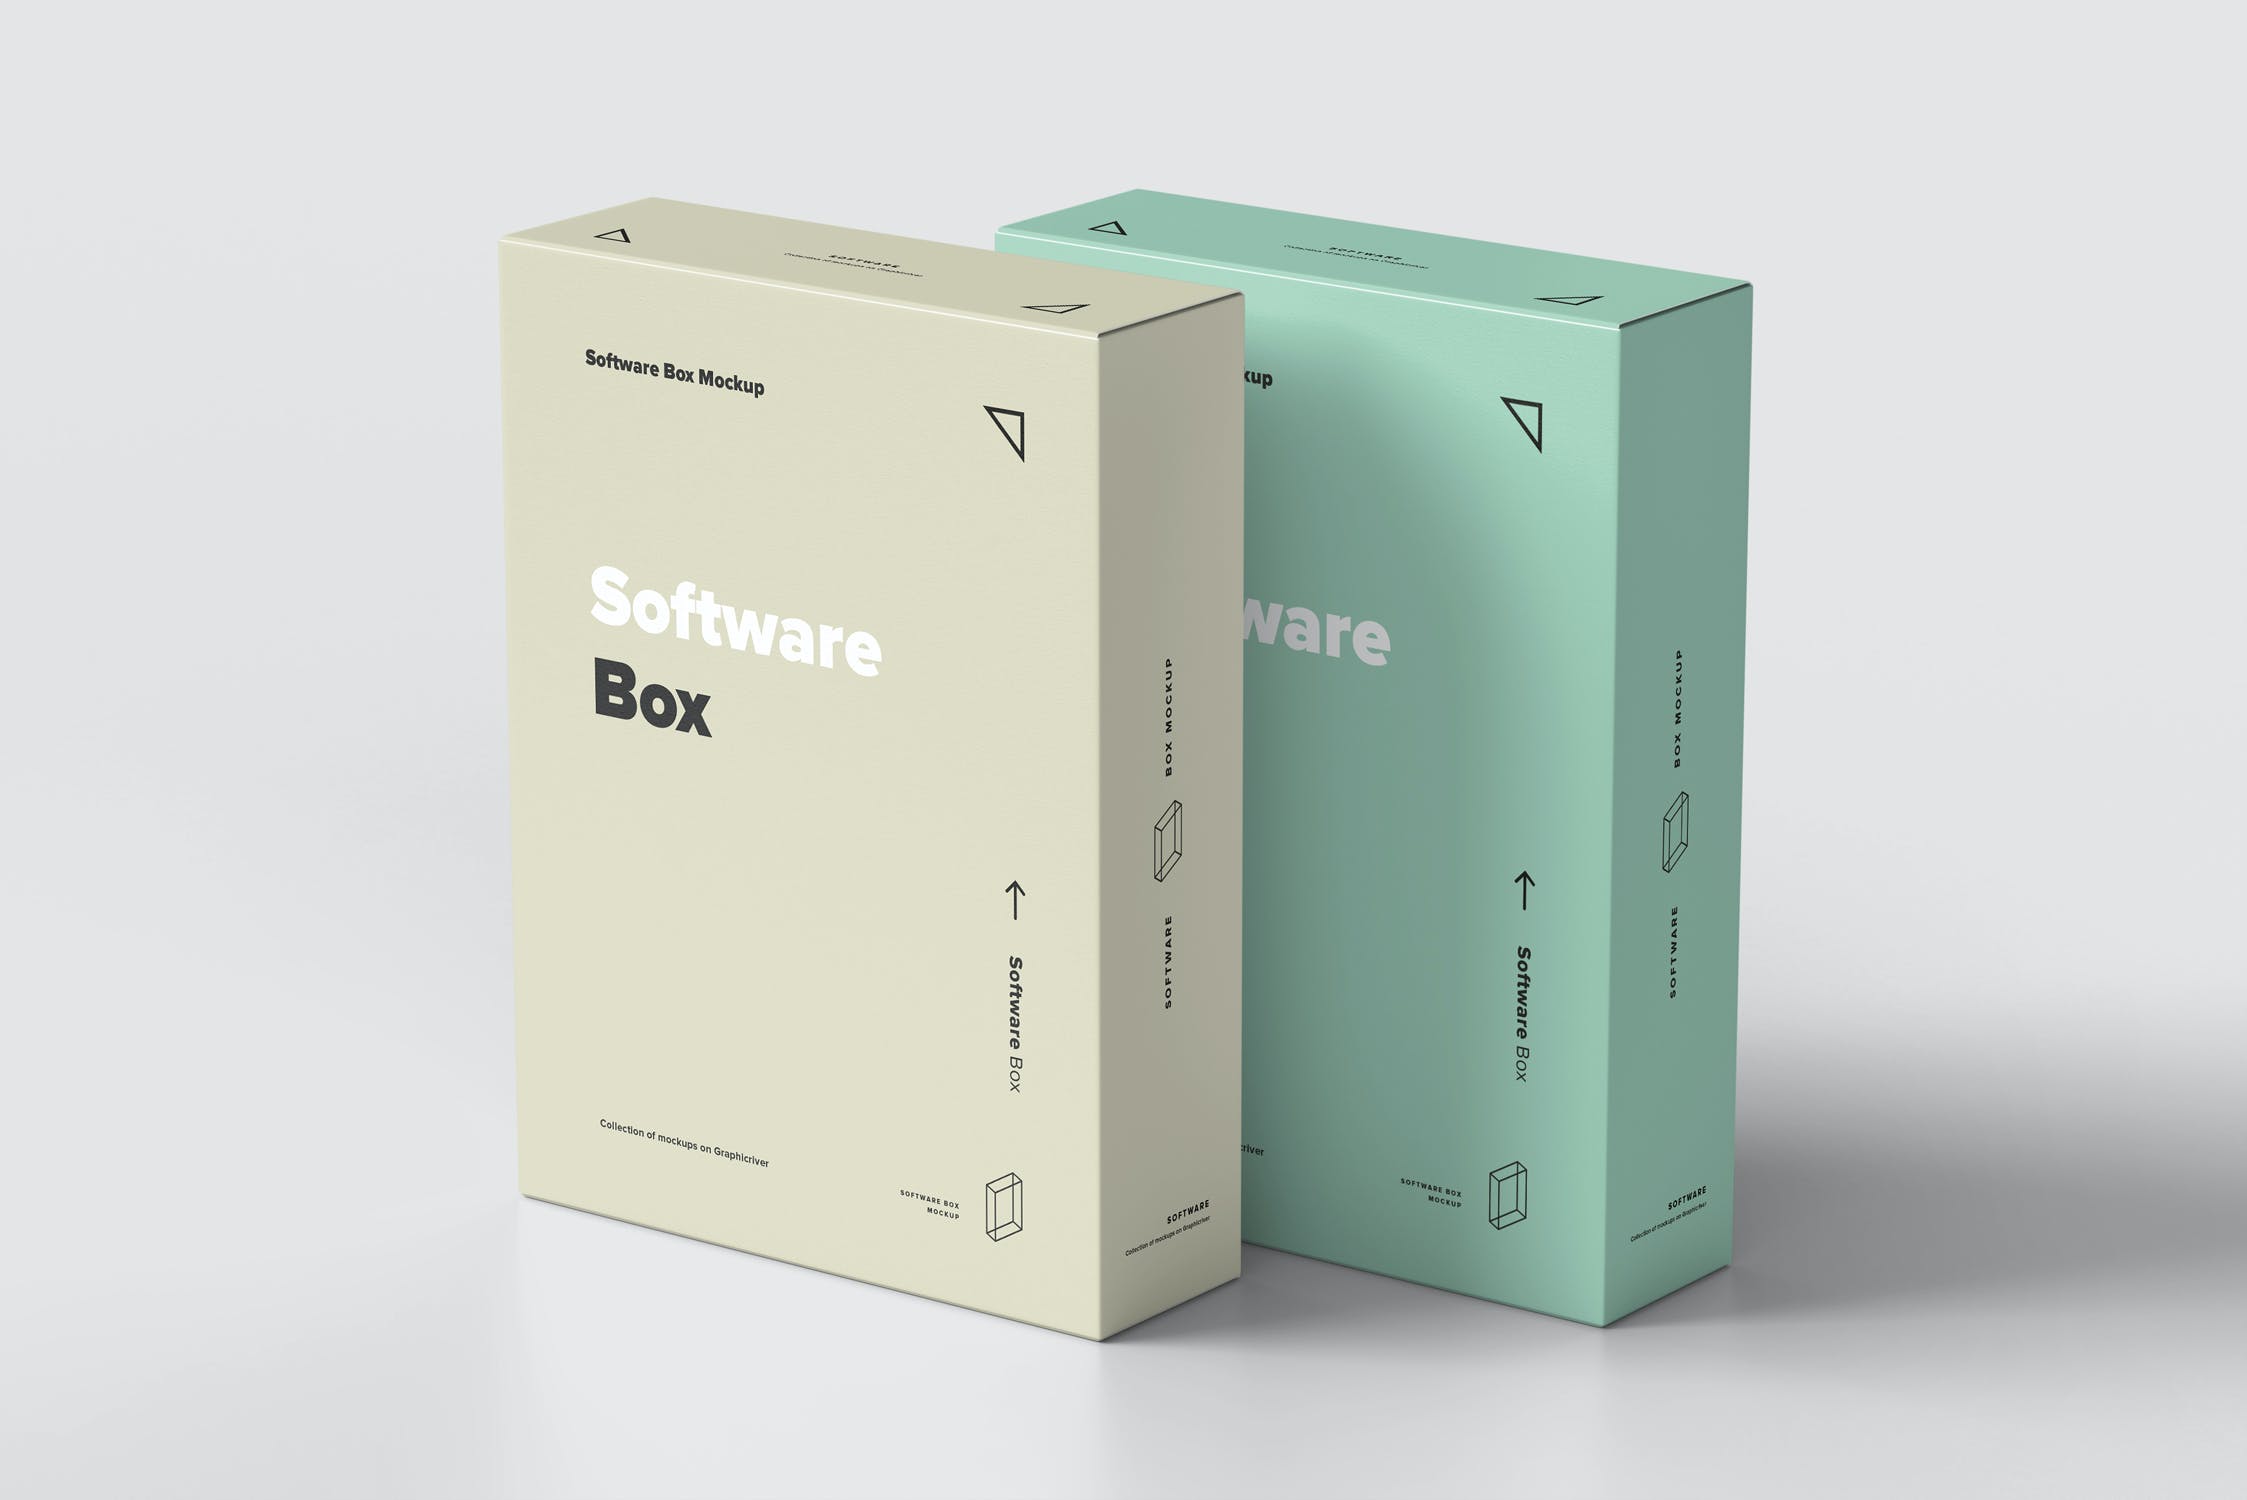 包装设计样机电脑游戏软件盒v2 Software Box Mock-up 2设计素材模板